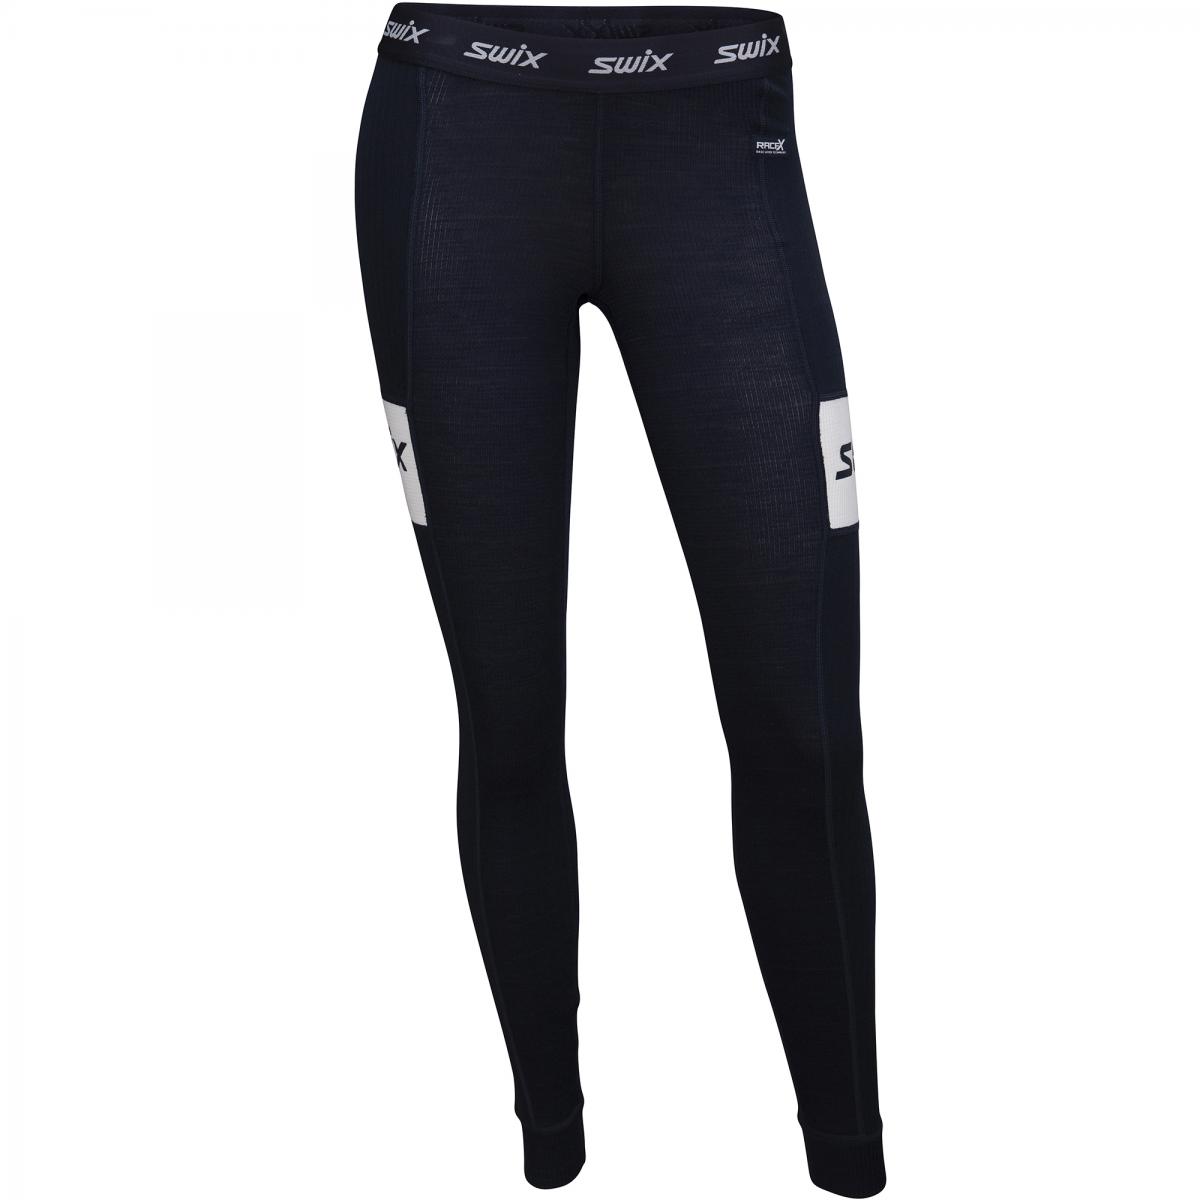 Swix Racex Warm Bodyw Pants Womens 75100 Dark Navy